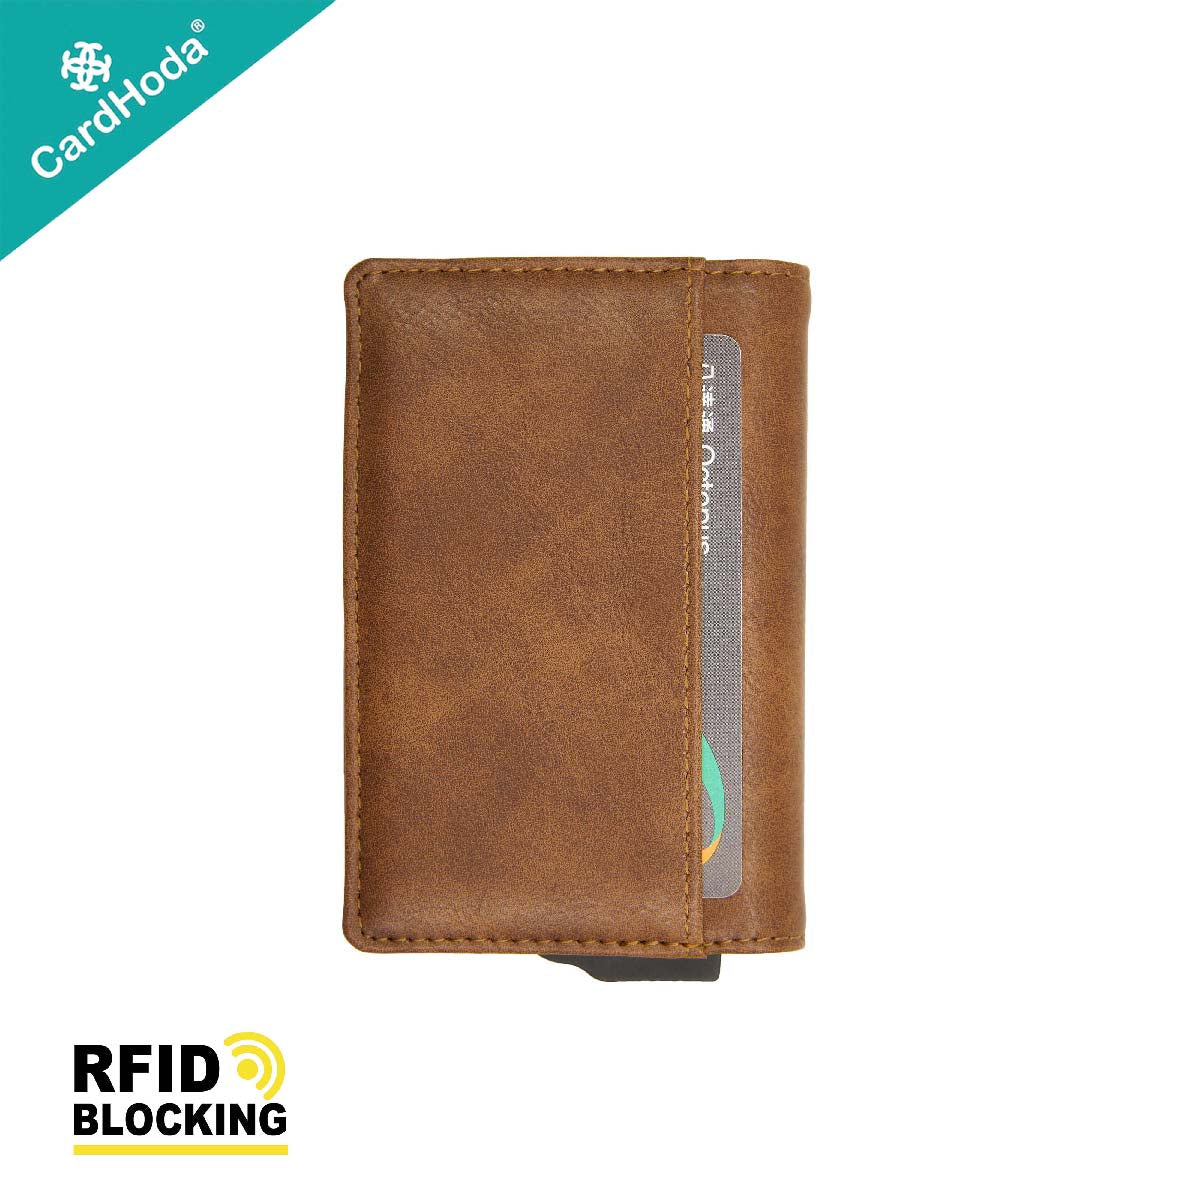 [寄海外] Cardhoda - Mini RFID 防盜卡 PU 皮款銀包(帶磁夾)(淺卡其/棕色/灰色) (4016-J619)